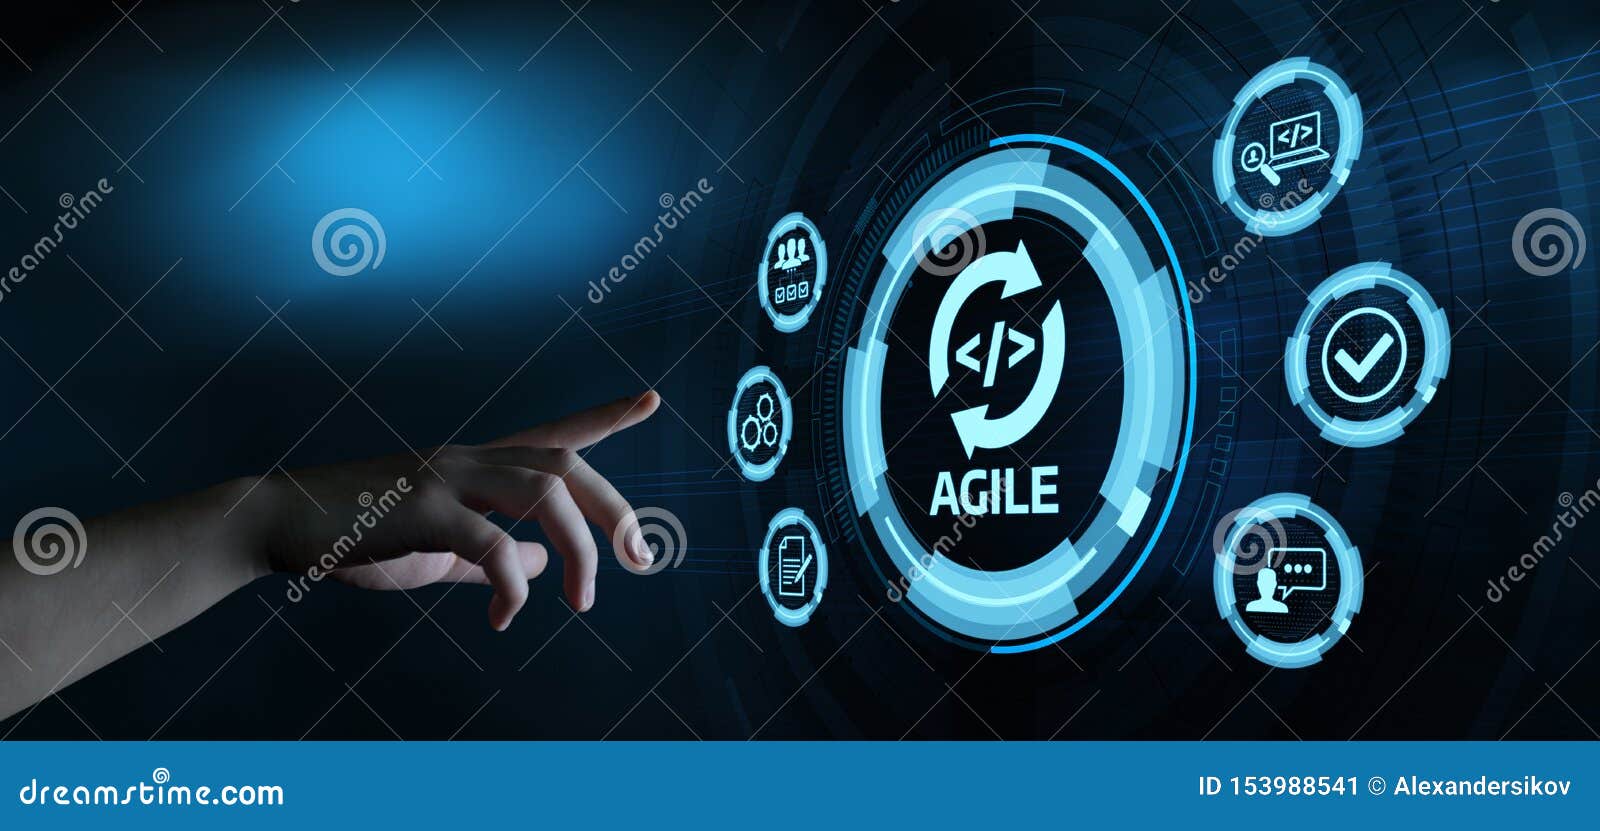 agile software development business internet techology concept